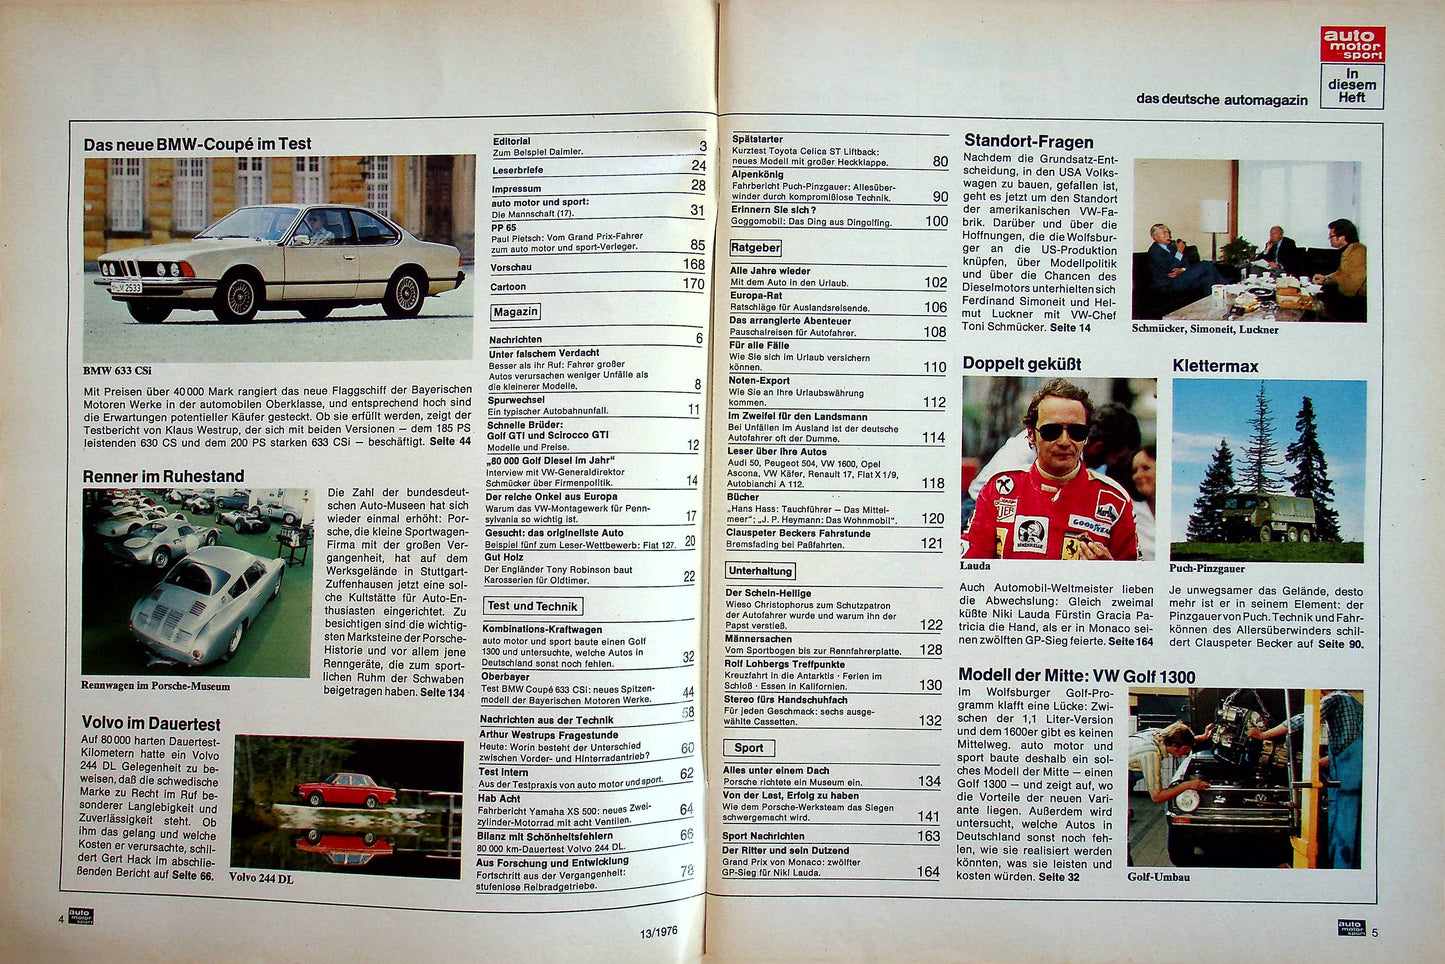 Auto Motor und Sport 13/1976